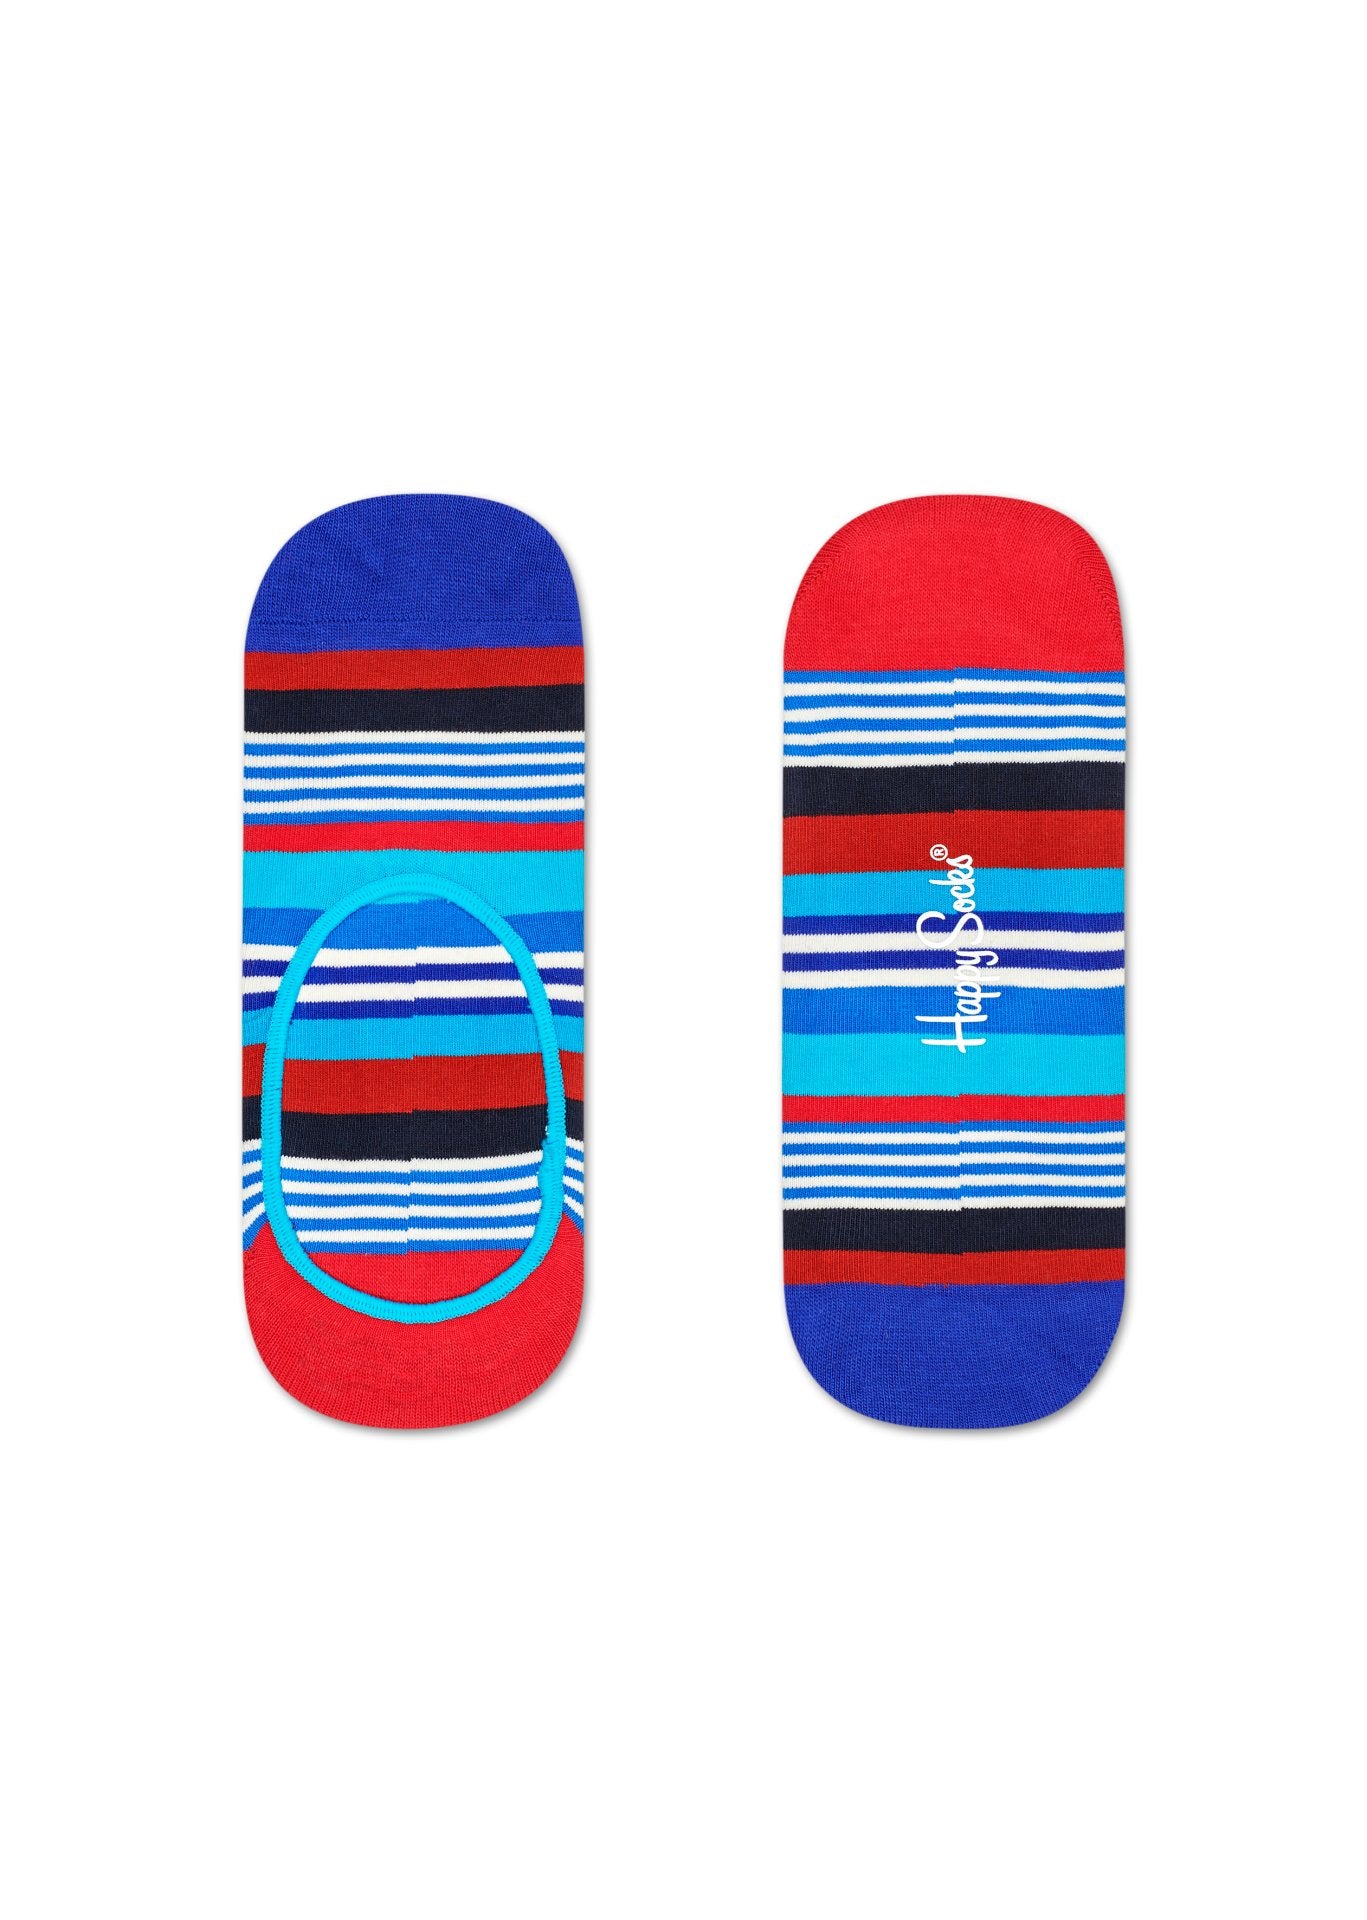 Modré nízké ponožky Happy Socks s barevnými pruhy, vzor Multi Stripe